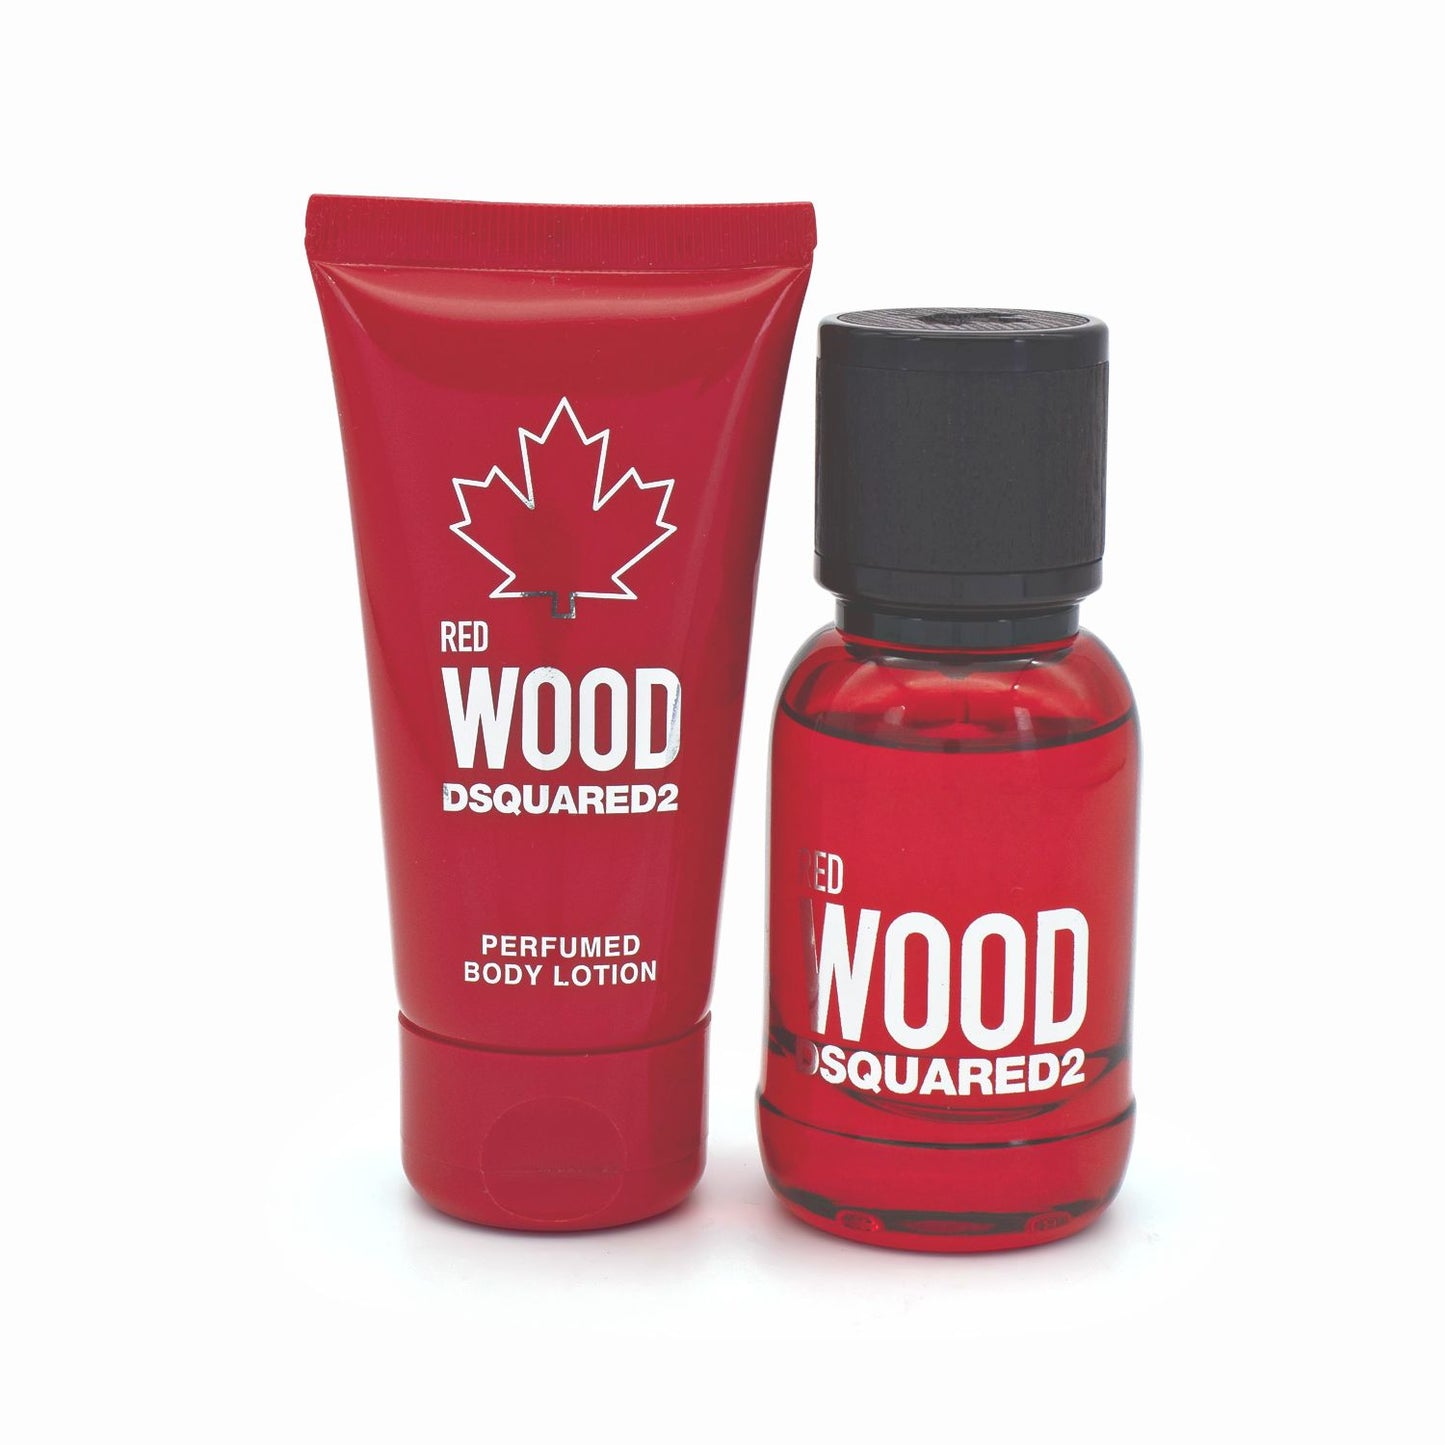 Dsquared2 Red Wood Eau De Toilette Gift Set 30ml & 50ml - Imperfect Box